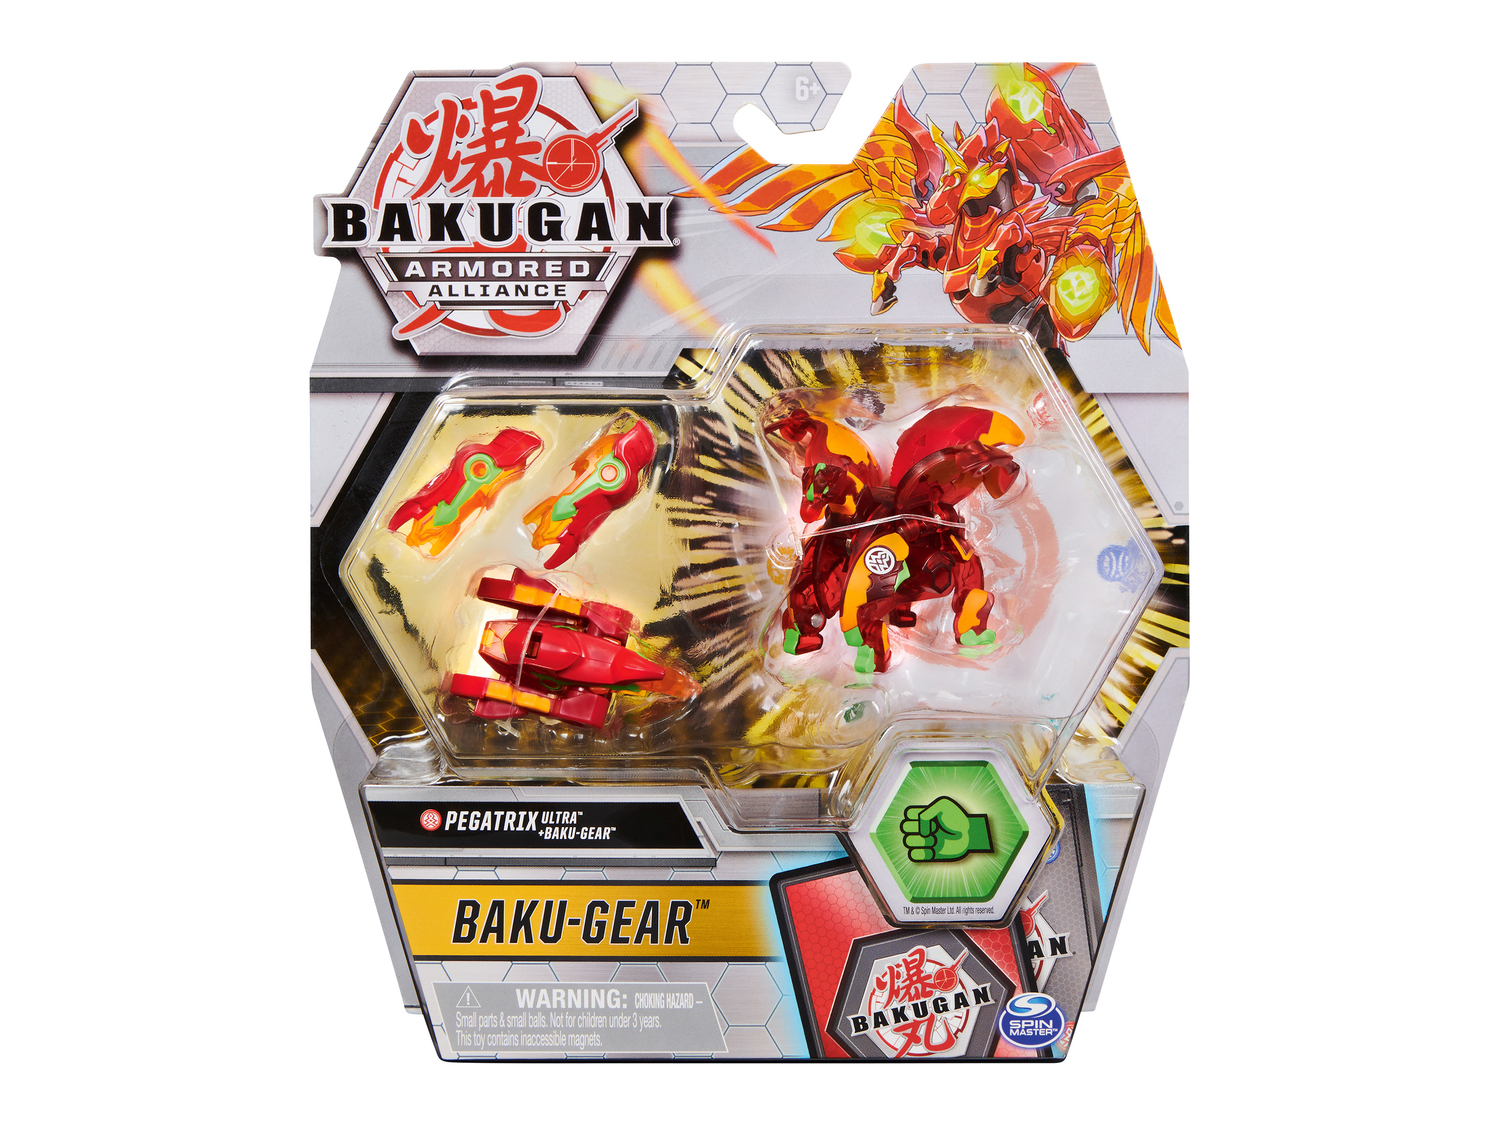 Gioco Bakugan con trasformatore Baku Gear Spin Master, prezzo 12.99 &#8364; ...